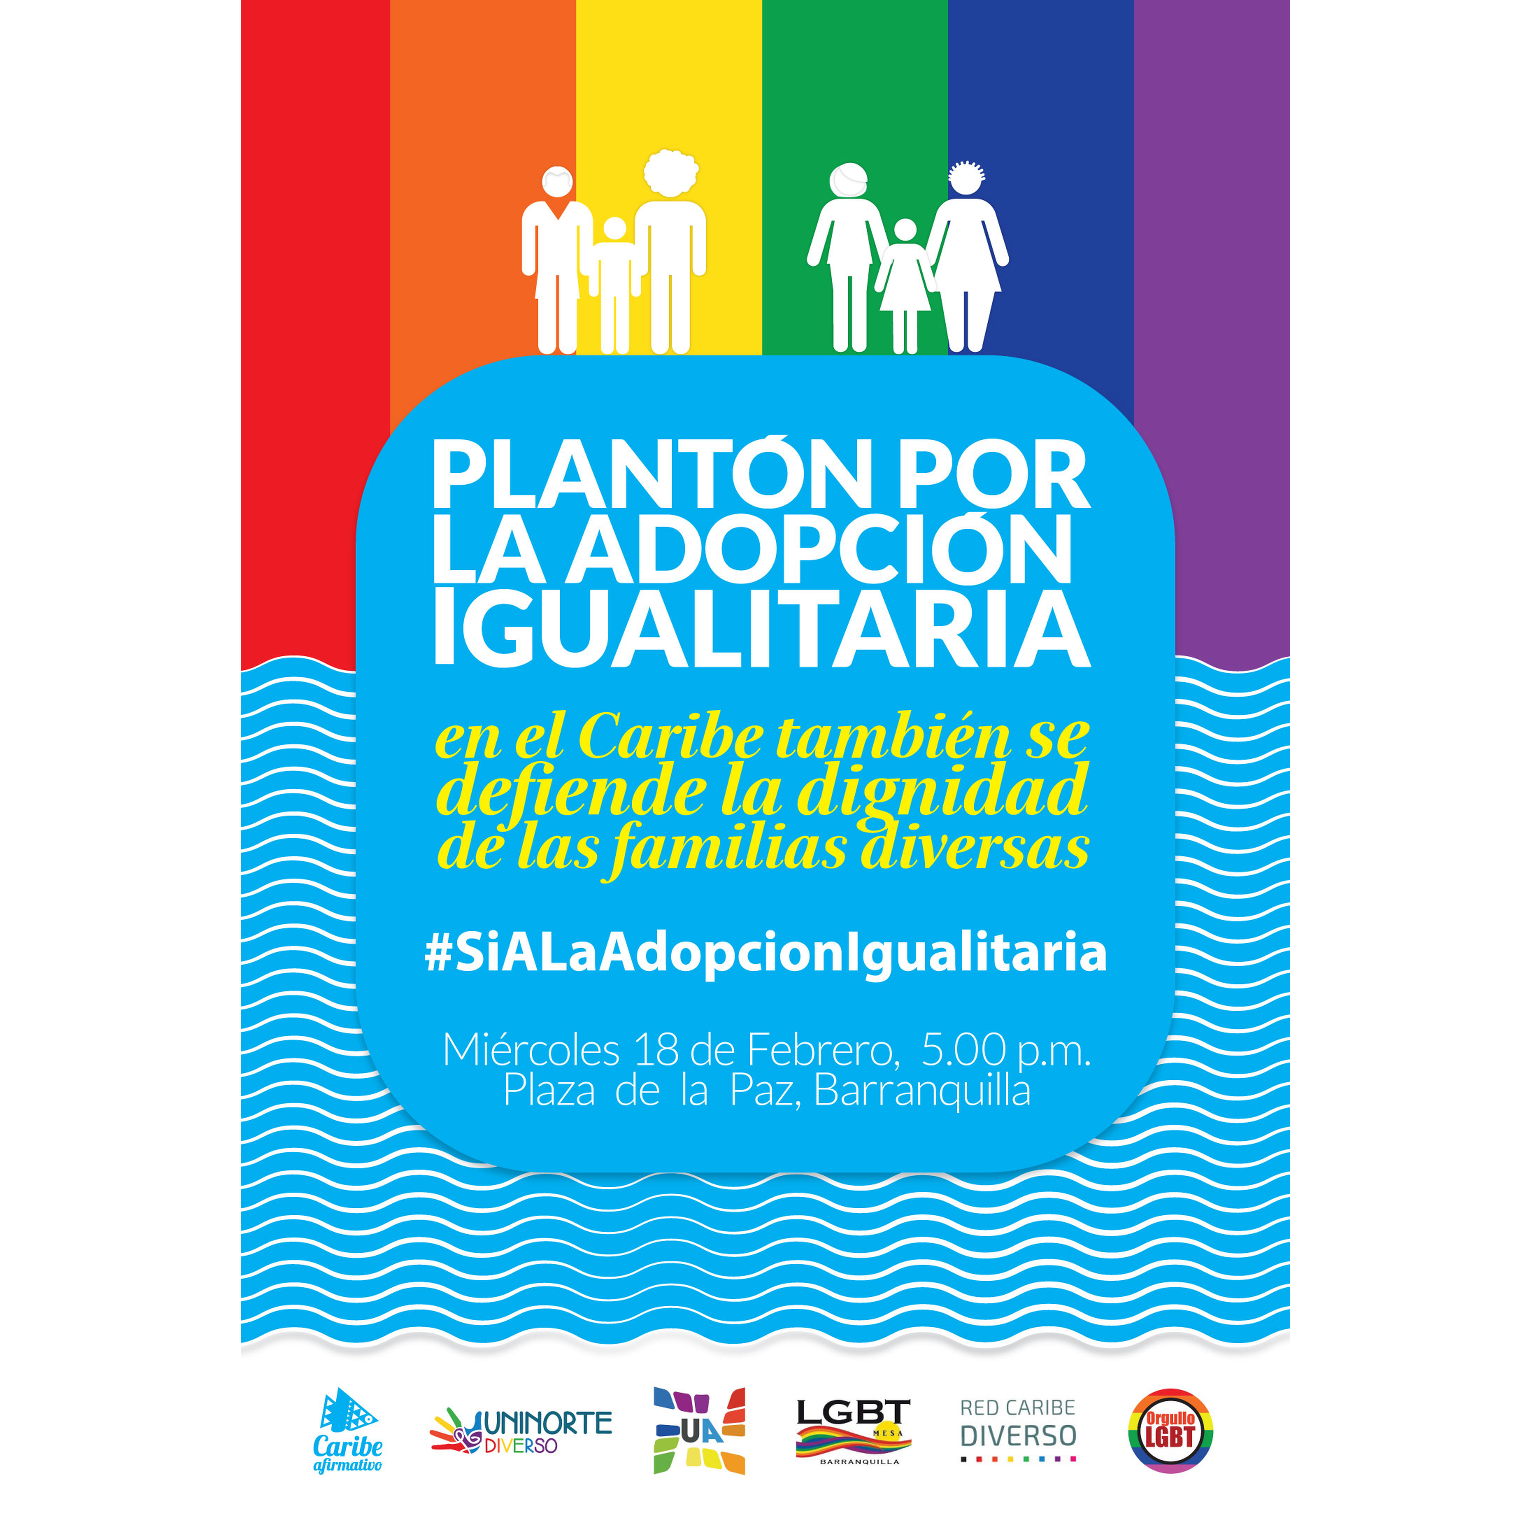 Transcrito: Plantón por la adopción igualitaria. En el Caribe también se defiende la idgnidad de las familias diversas. #SiALaAdopcionIgualitaria. Miércoles 18 de Febrero, 5:00 p.m. Plaza de la Paz, Barranquilla.